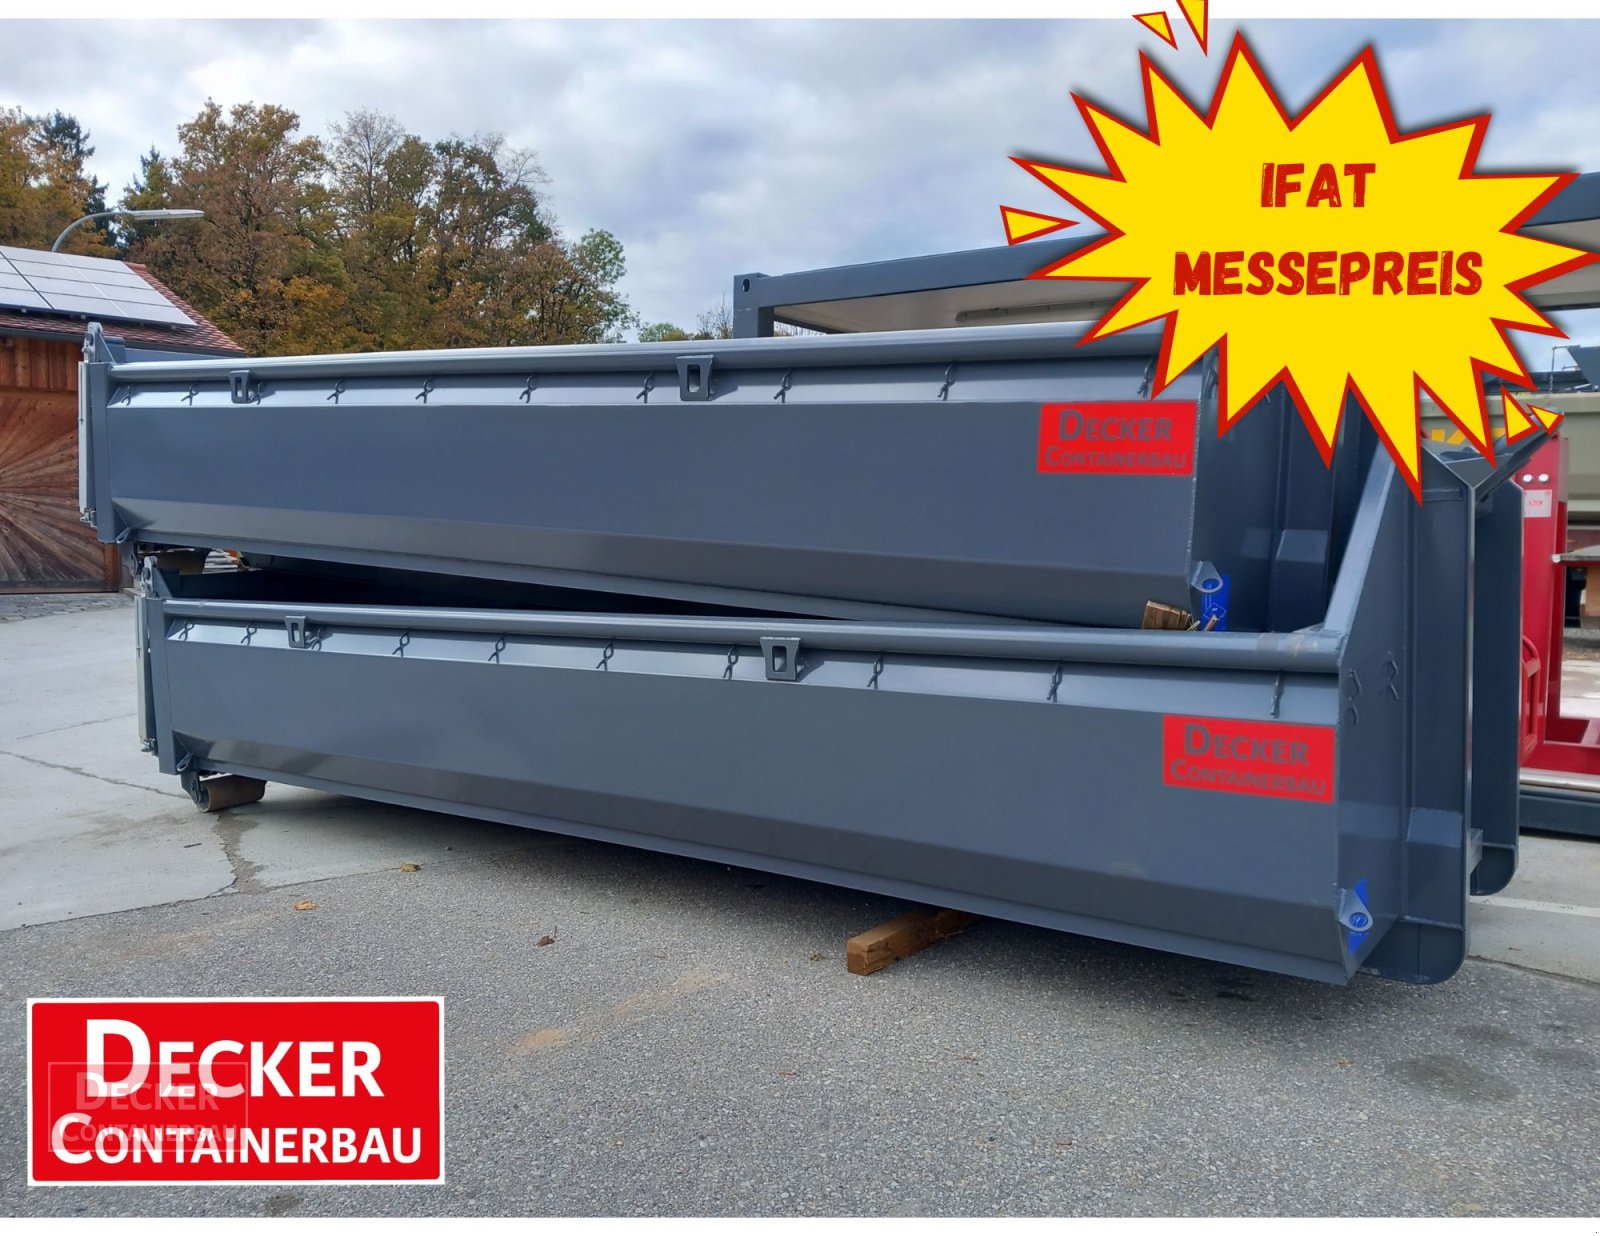 Abrollcontainer des Typs Decker Container IFAT-Messepreise, 34396 Liebenau,ab 4960€ netto, sofort verfügbar, Neumaschine in Liebenau (Bild 1)